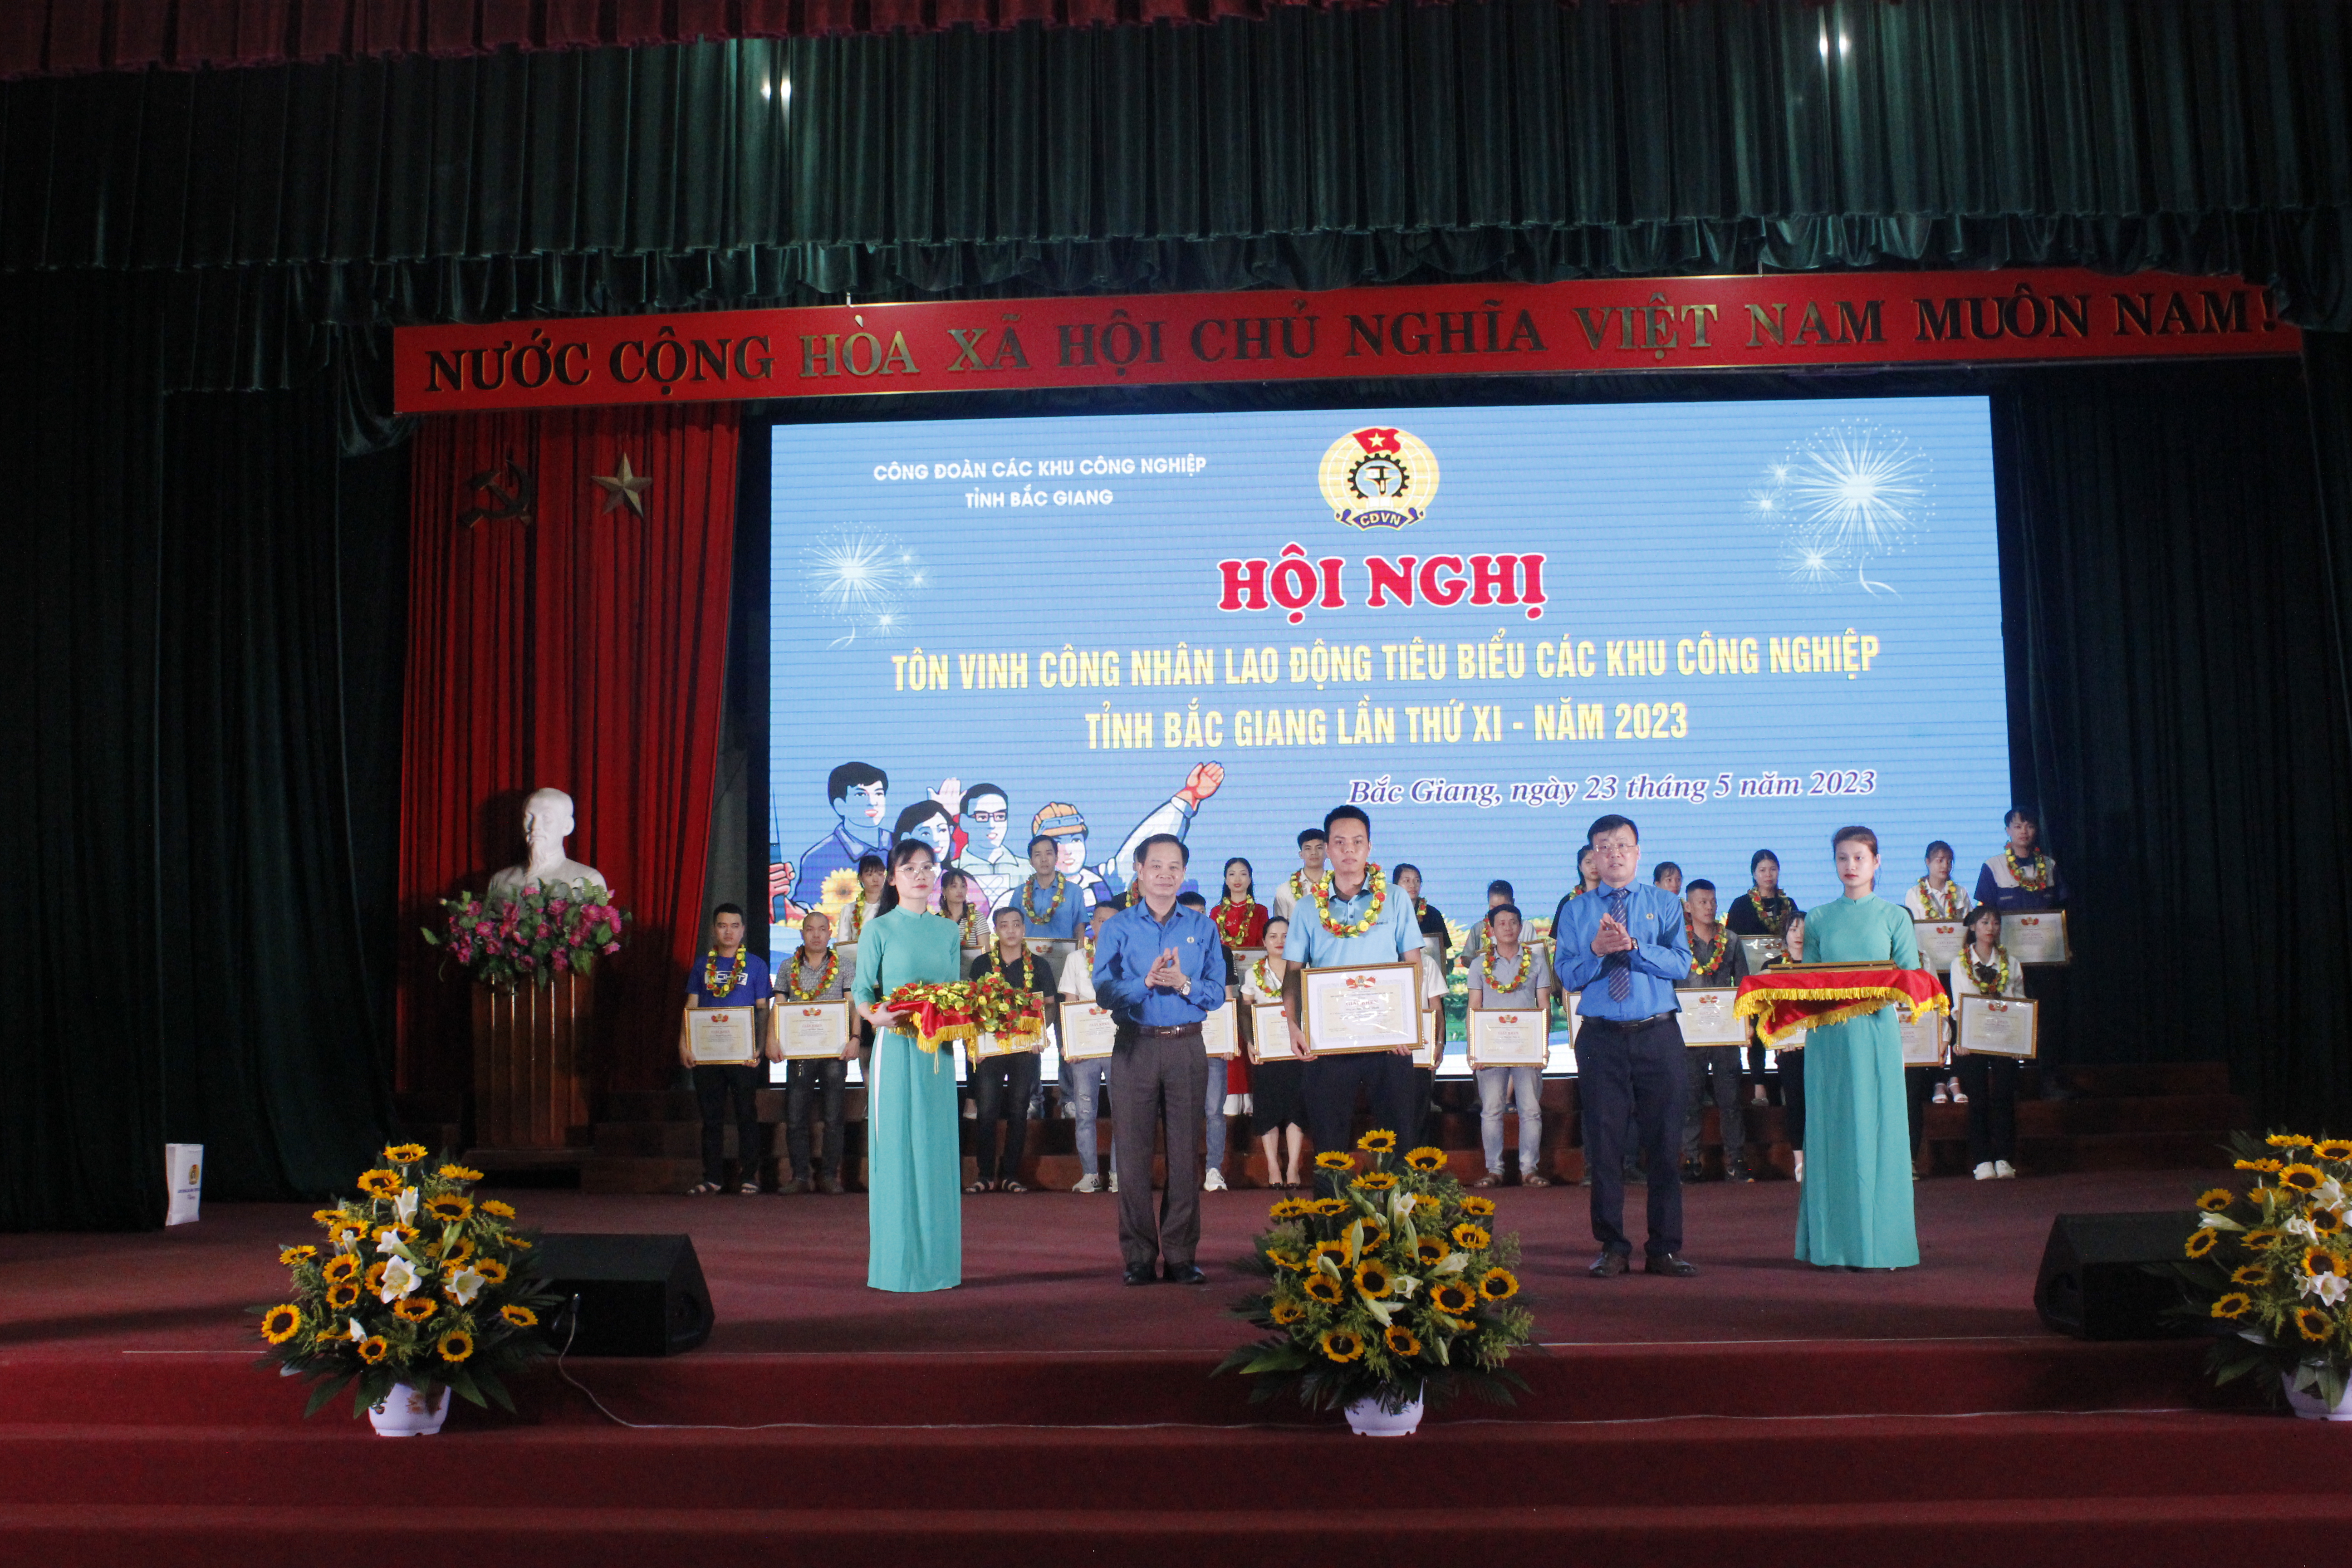 Hội nghị tôn vinh công nhân lao động tiêu biểu các khu công nghiệp tỉnh Bắc Giang lần thứ XI-năm...